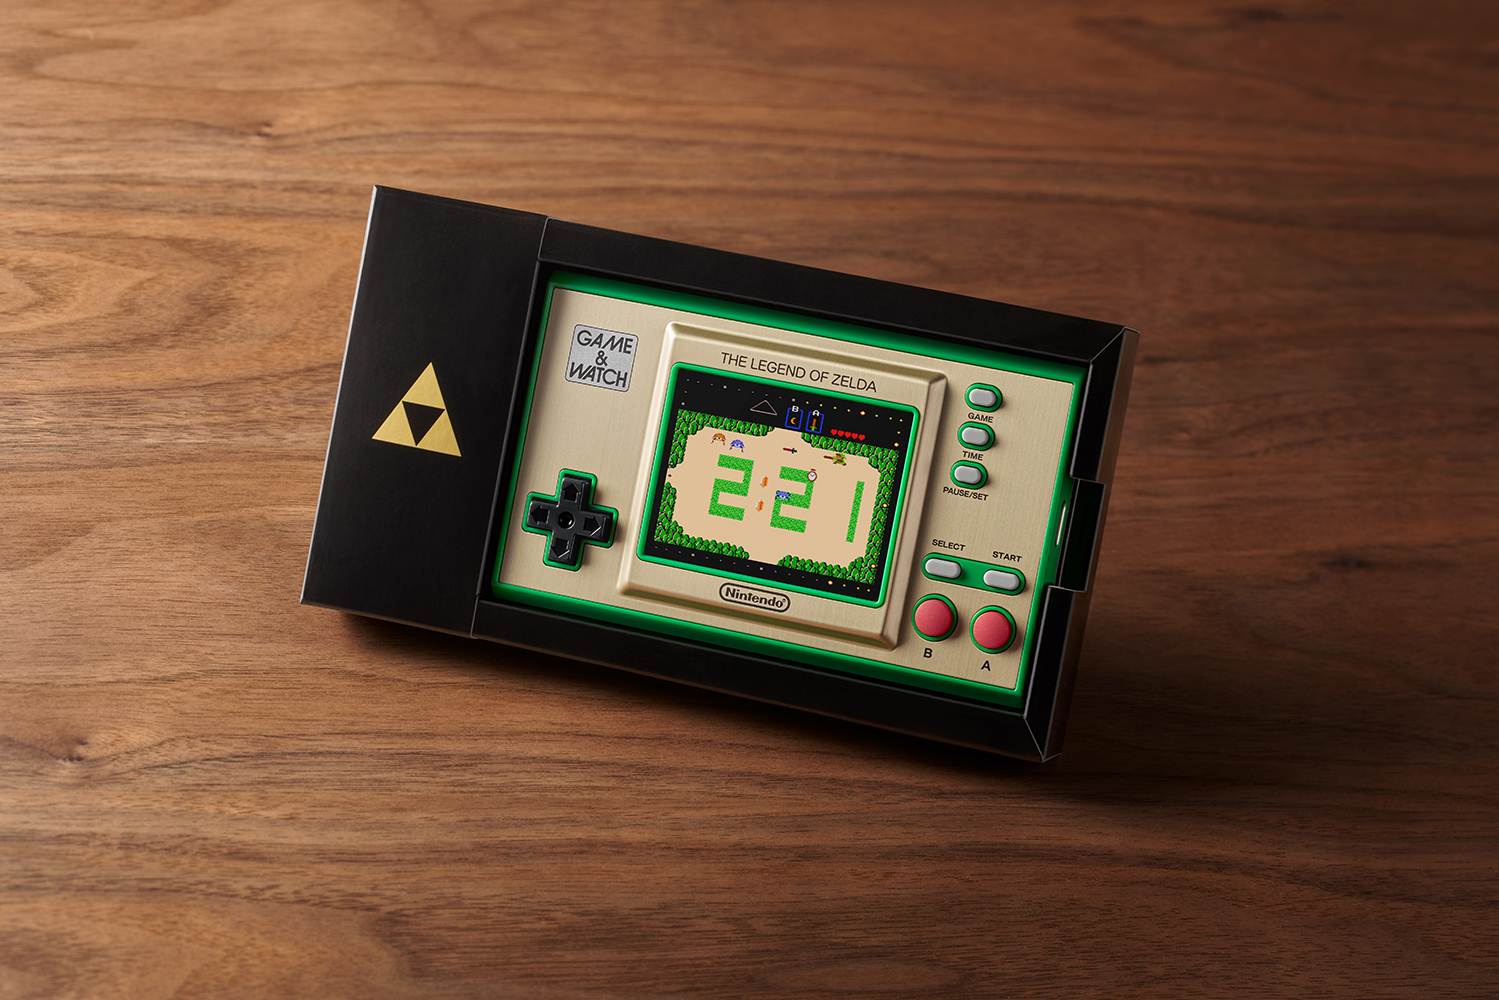 Game & Watch: The Legend of Zelda?, Nintendo NES Classic - image 4 of 18